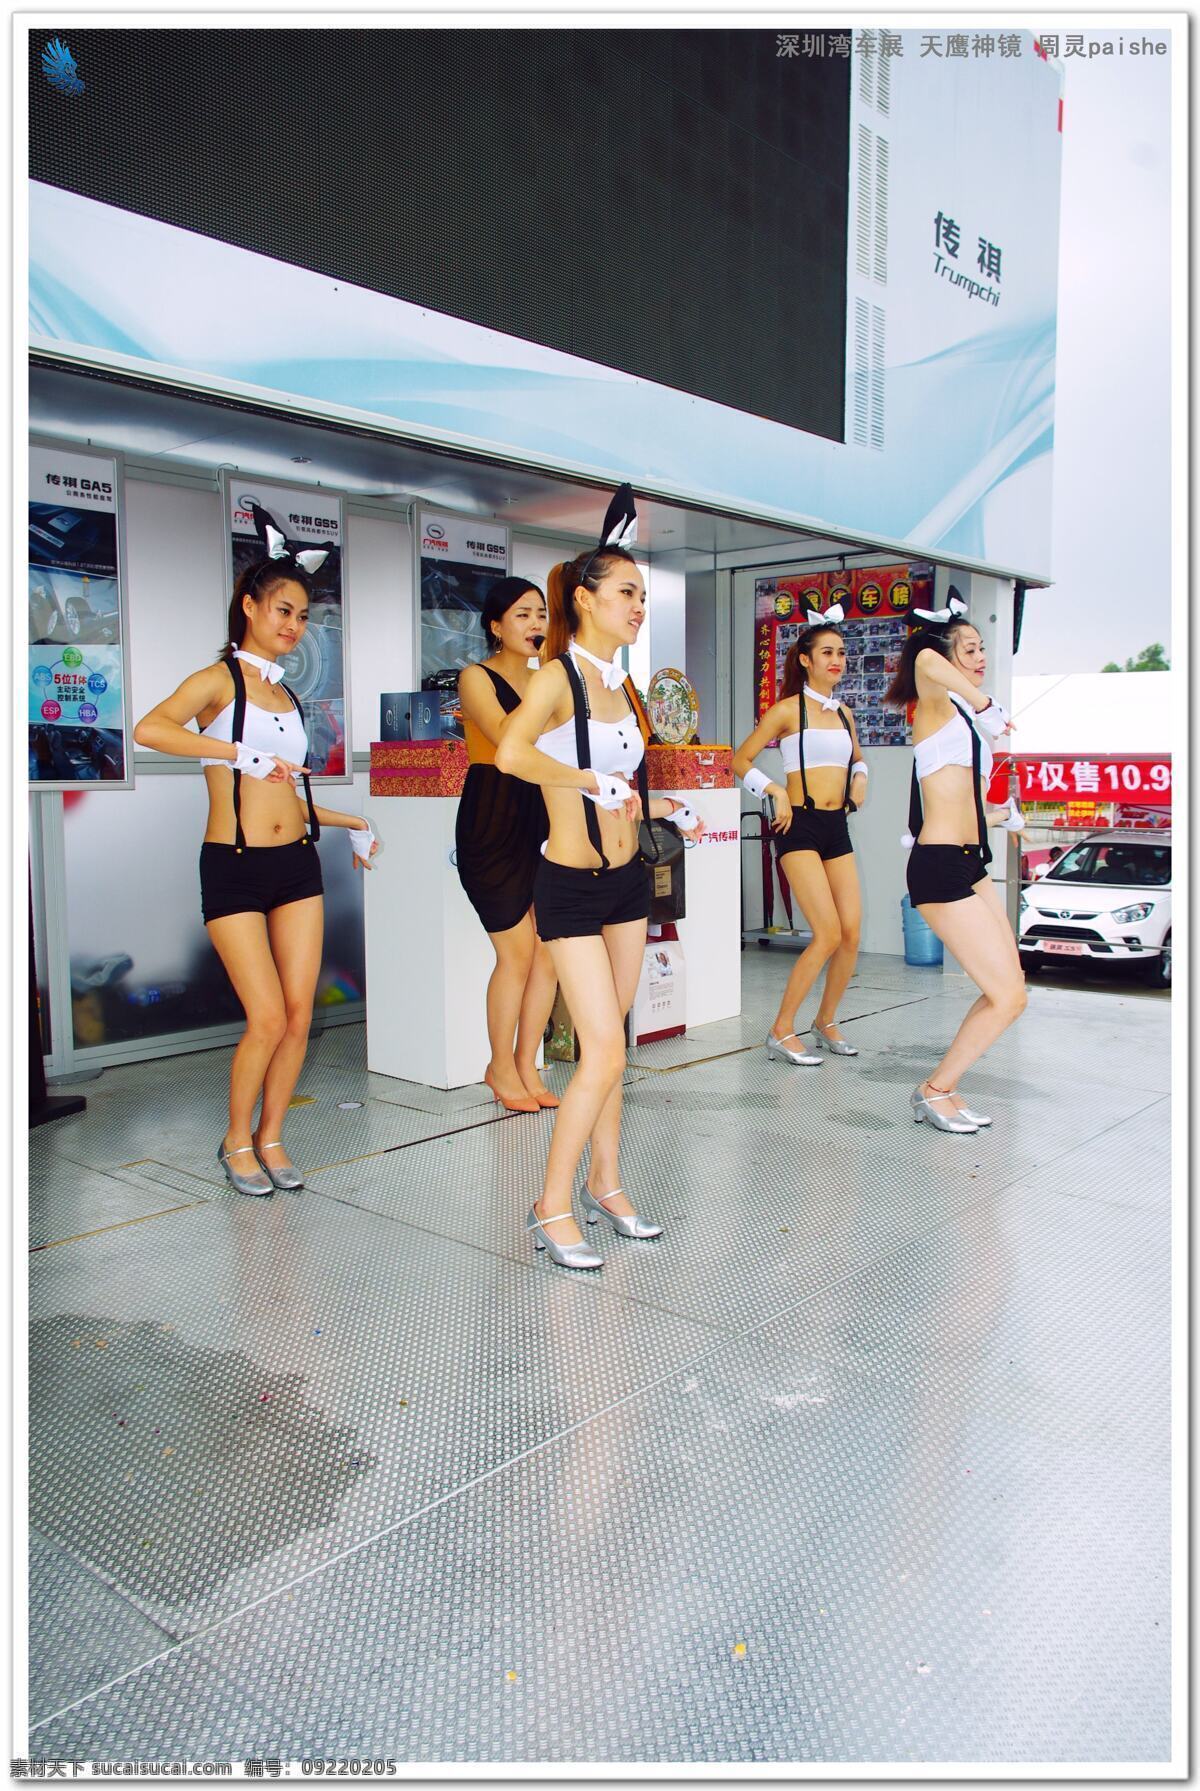 车模 电子显示屏 人物摄影 人物图库 天空 职业人物 车展表演 2013 深圳湾 车展 车展舞台 人物表演 舞蹈表演 psd源文件